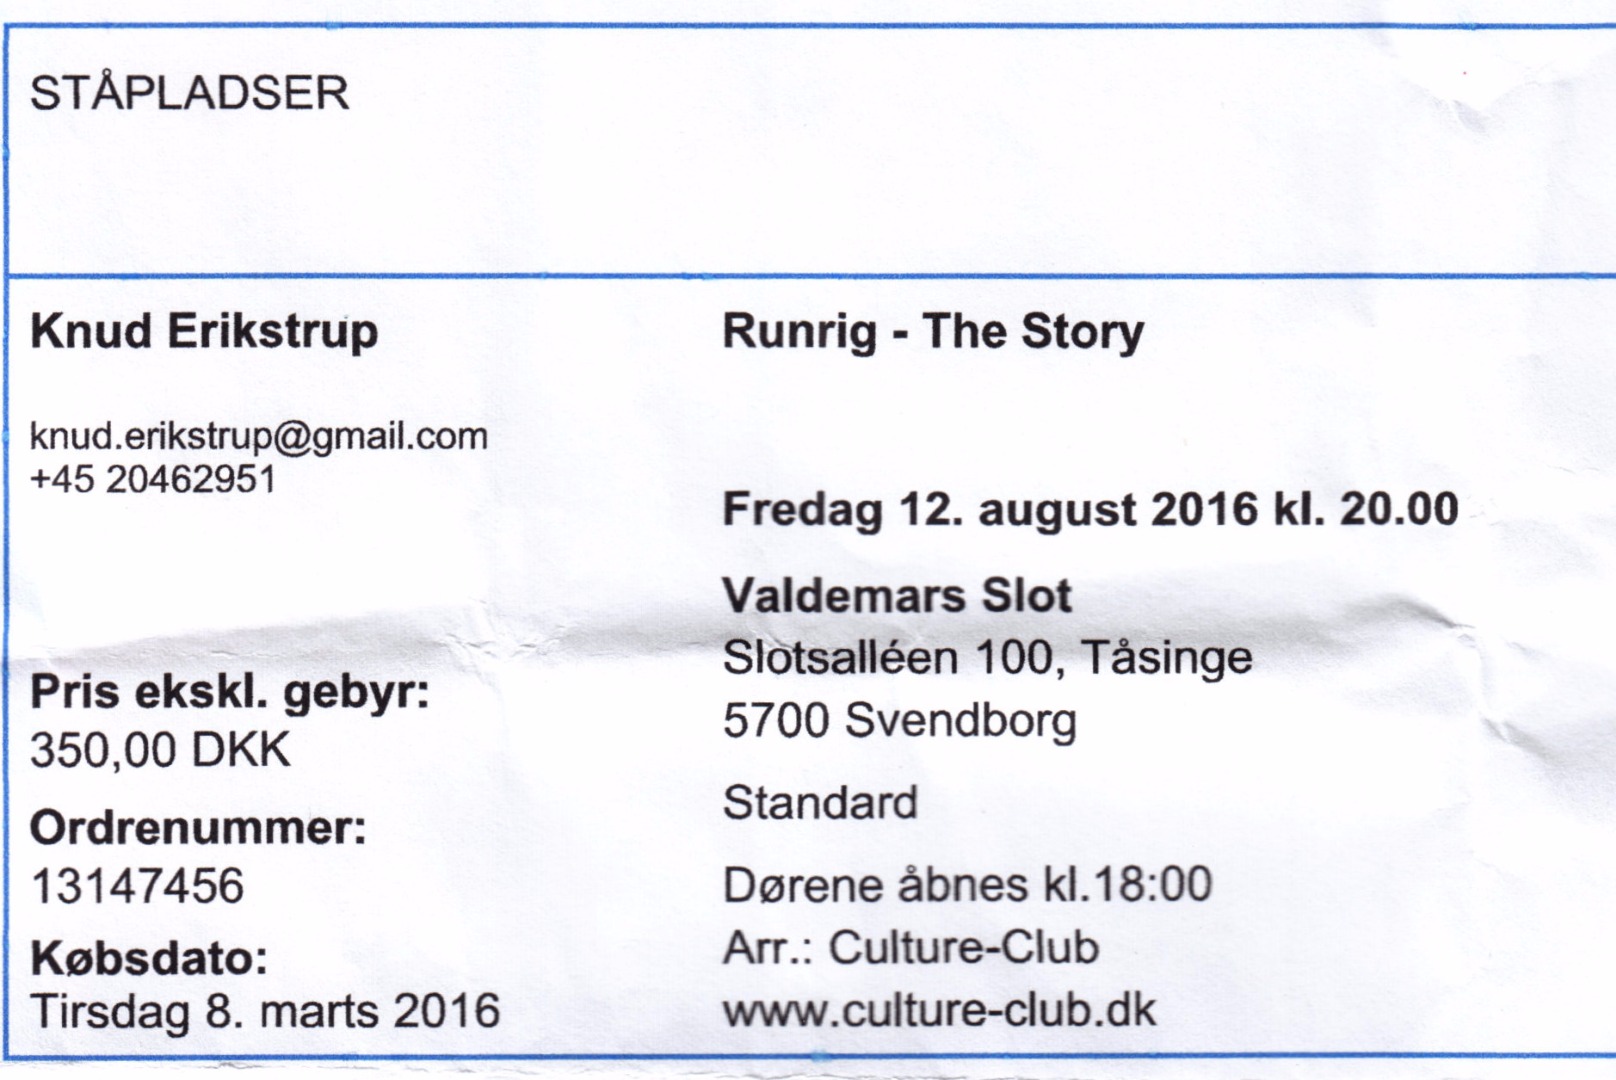 *12. - 13. August 2016 Koncert Runrig